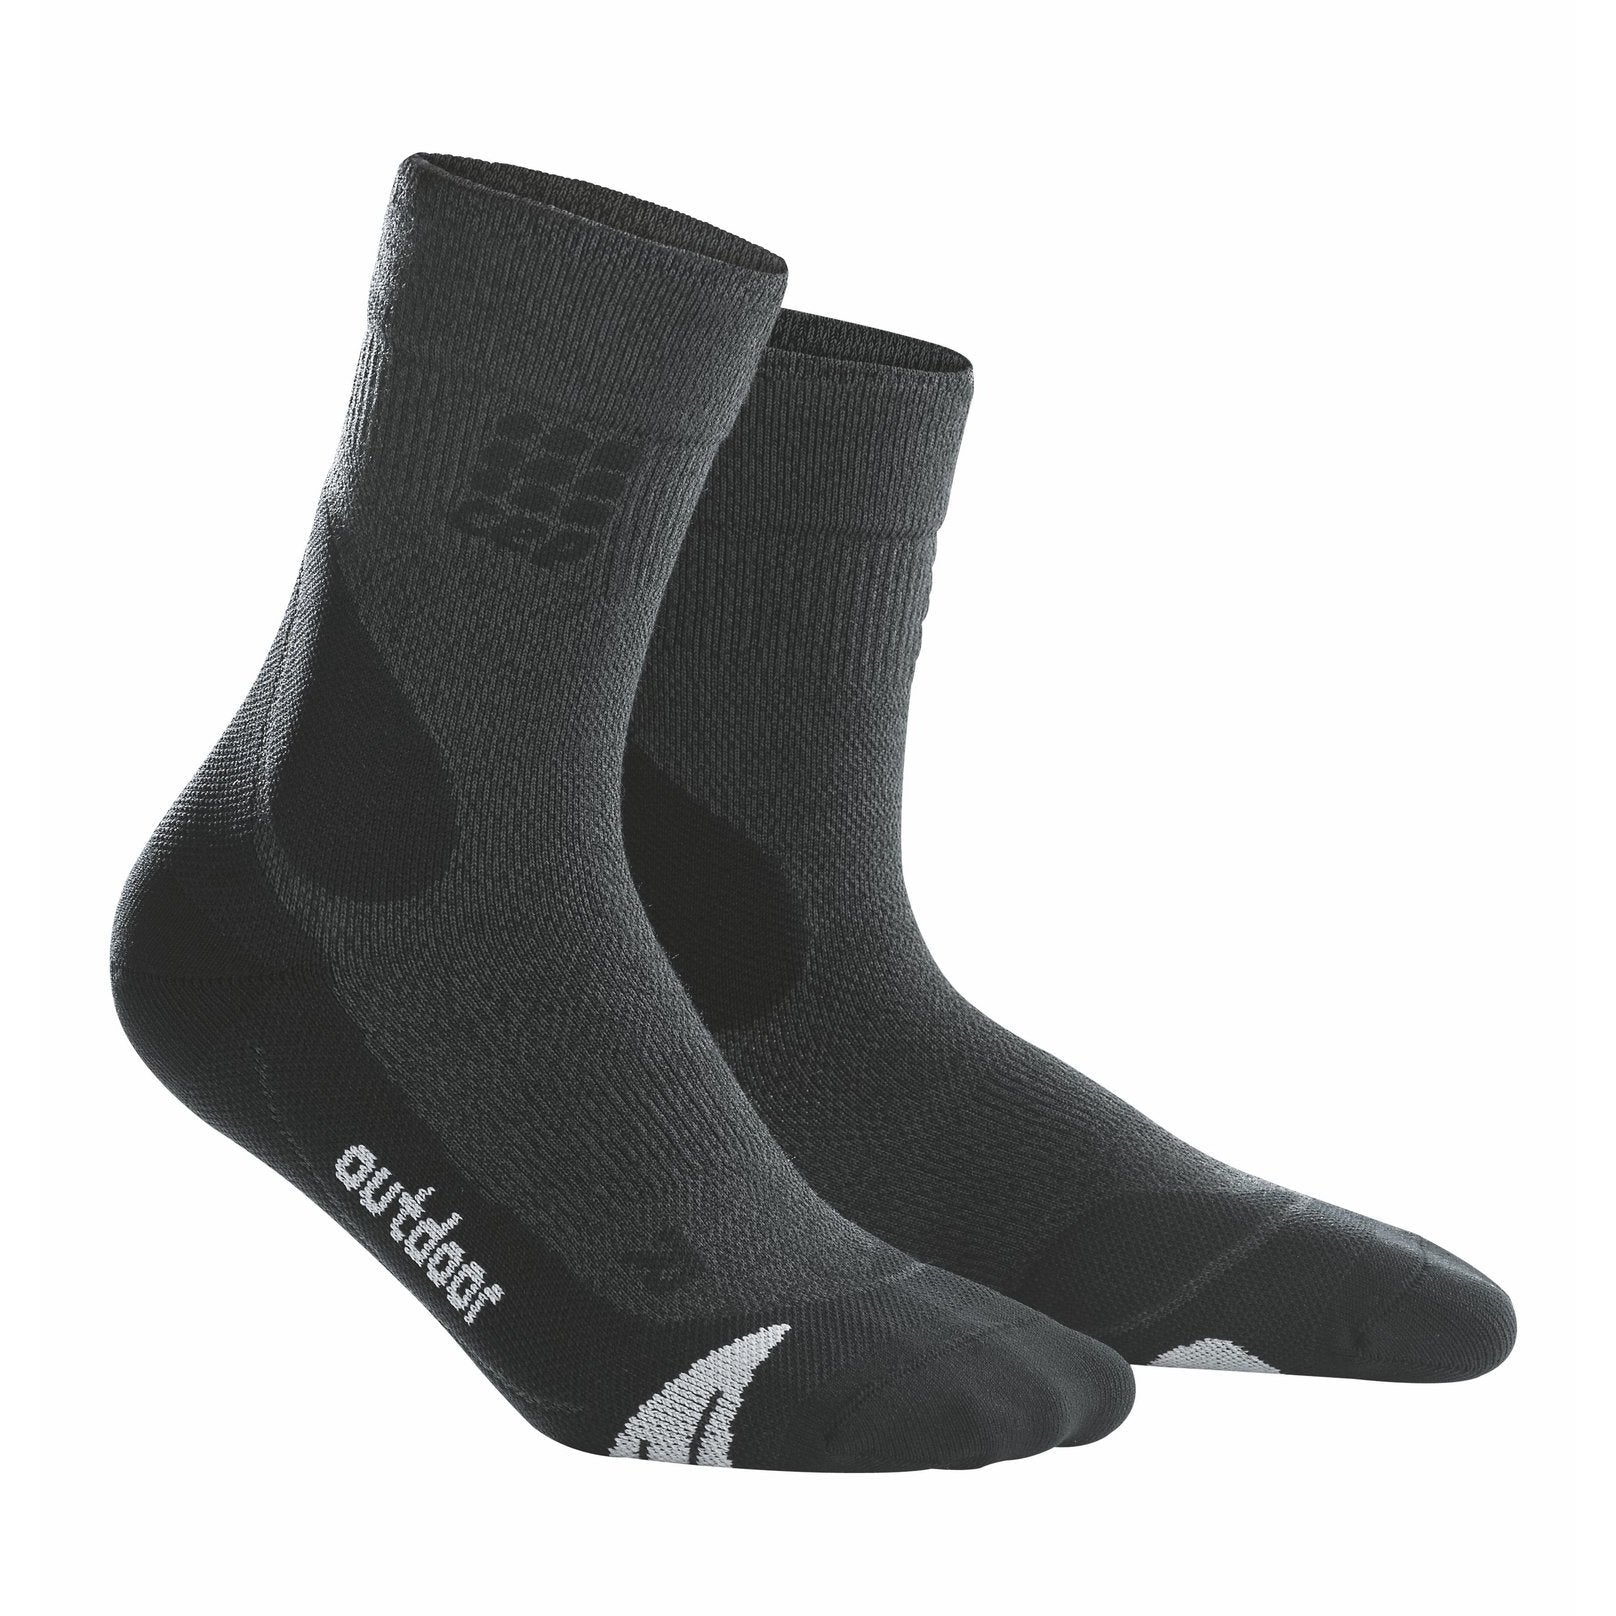 Men's Outdoor Merino Mid-Cut Socks